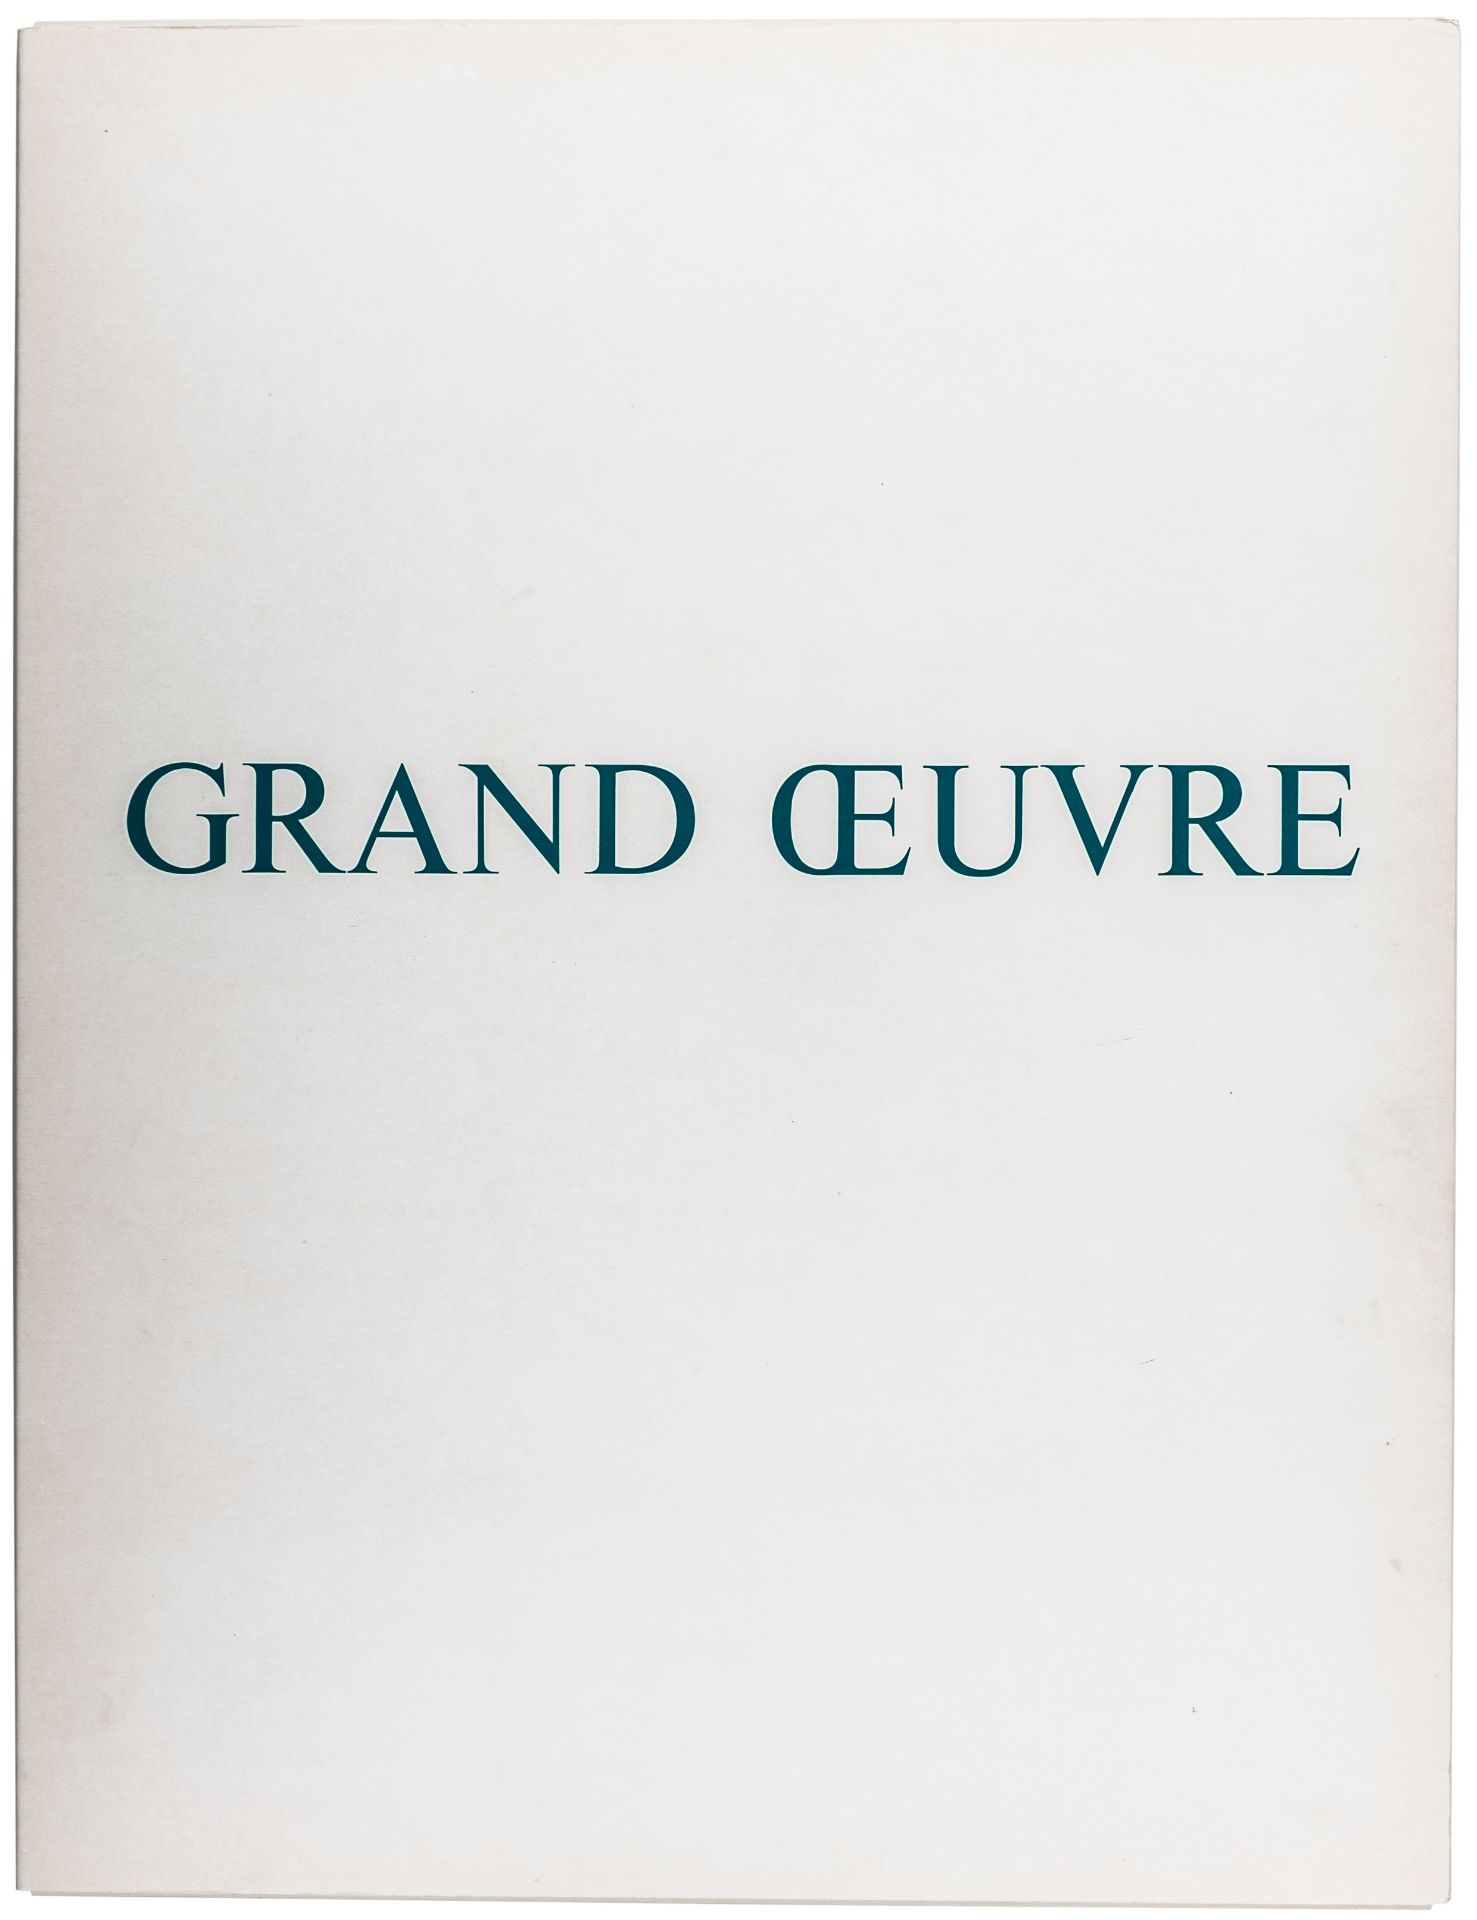 Verheyen, Jef. Grand Oeuvre - 10 - Image 11 of 18